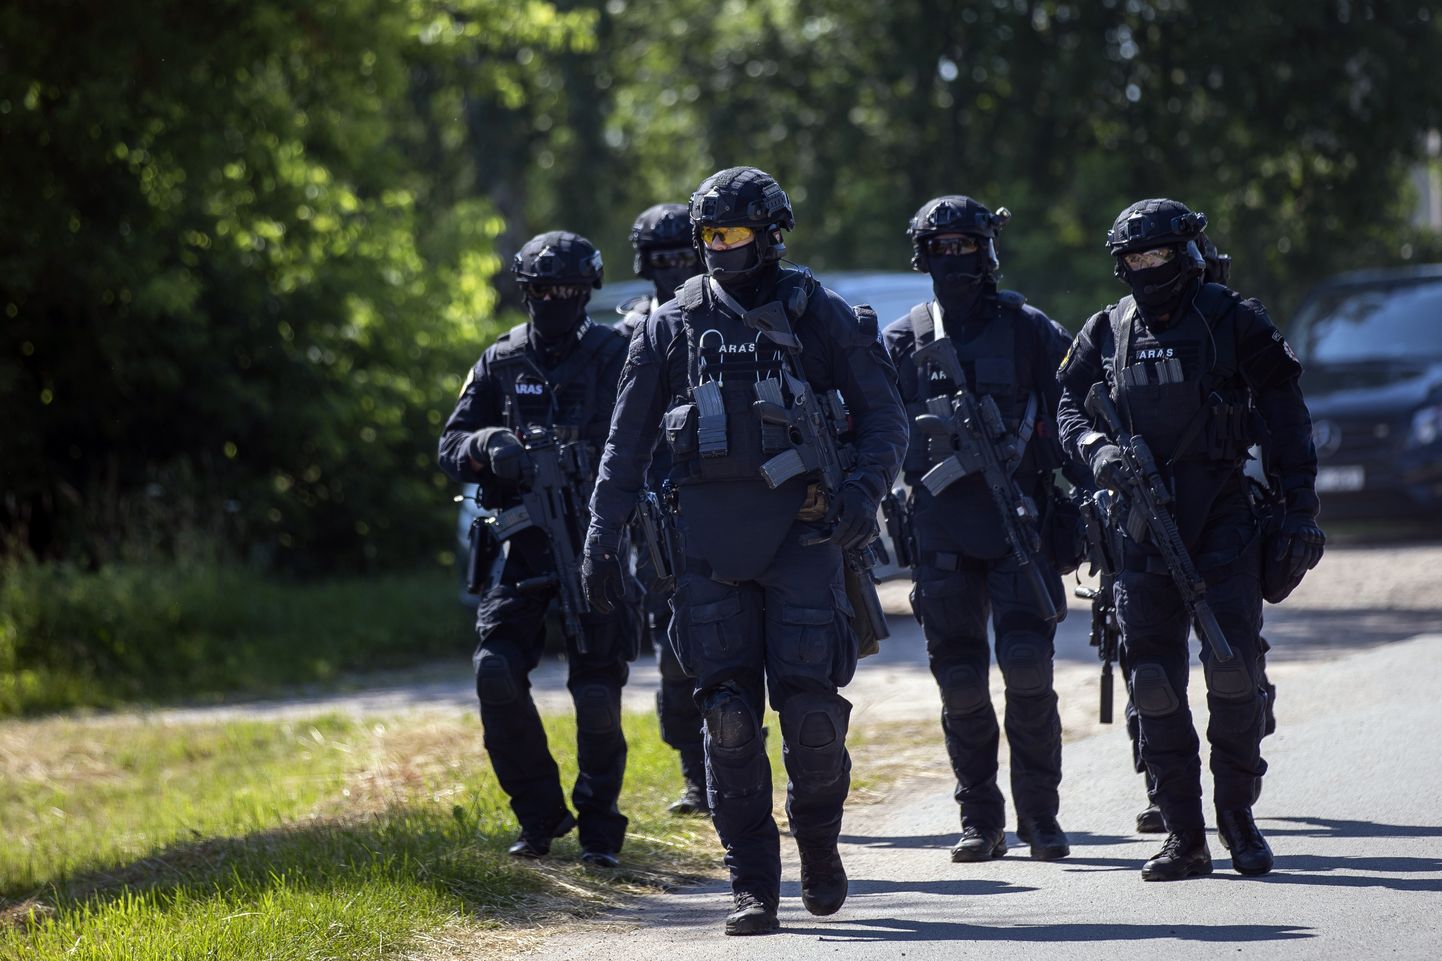 Leedu politsei terroritõrjeüksus juulis Vydeniais, milles asuvas põgenikekeskuses toimus mäss